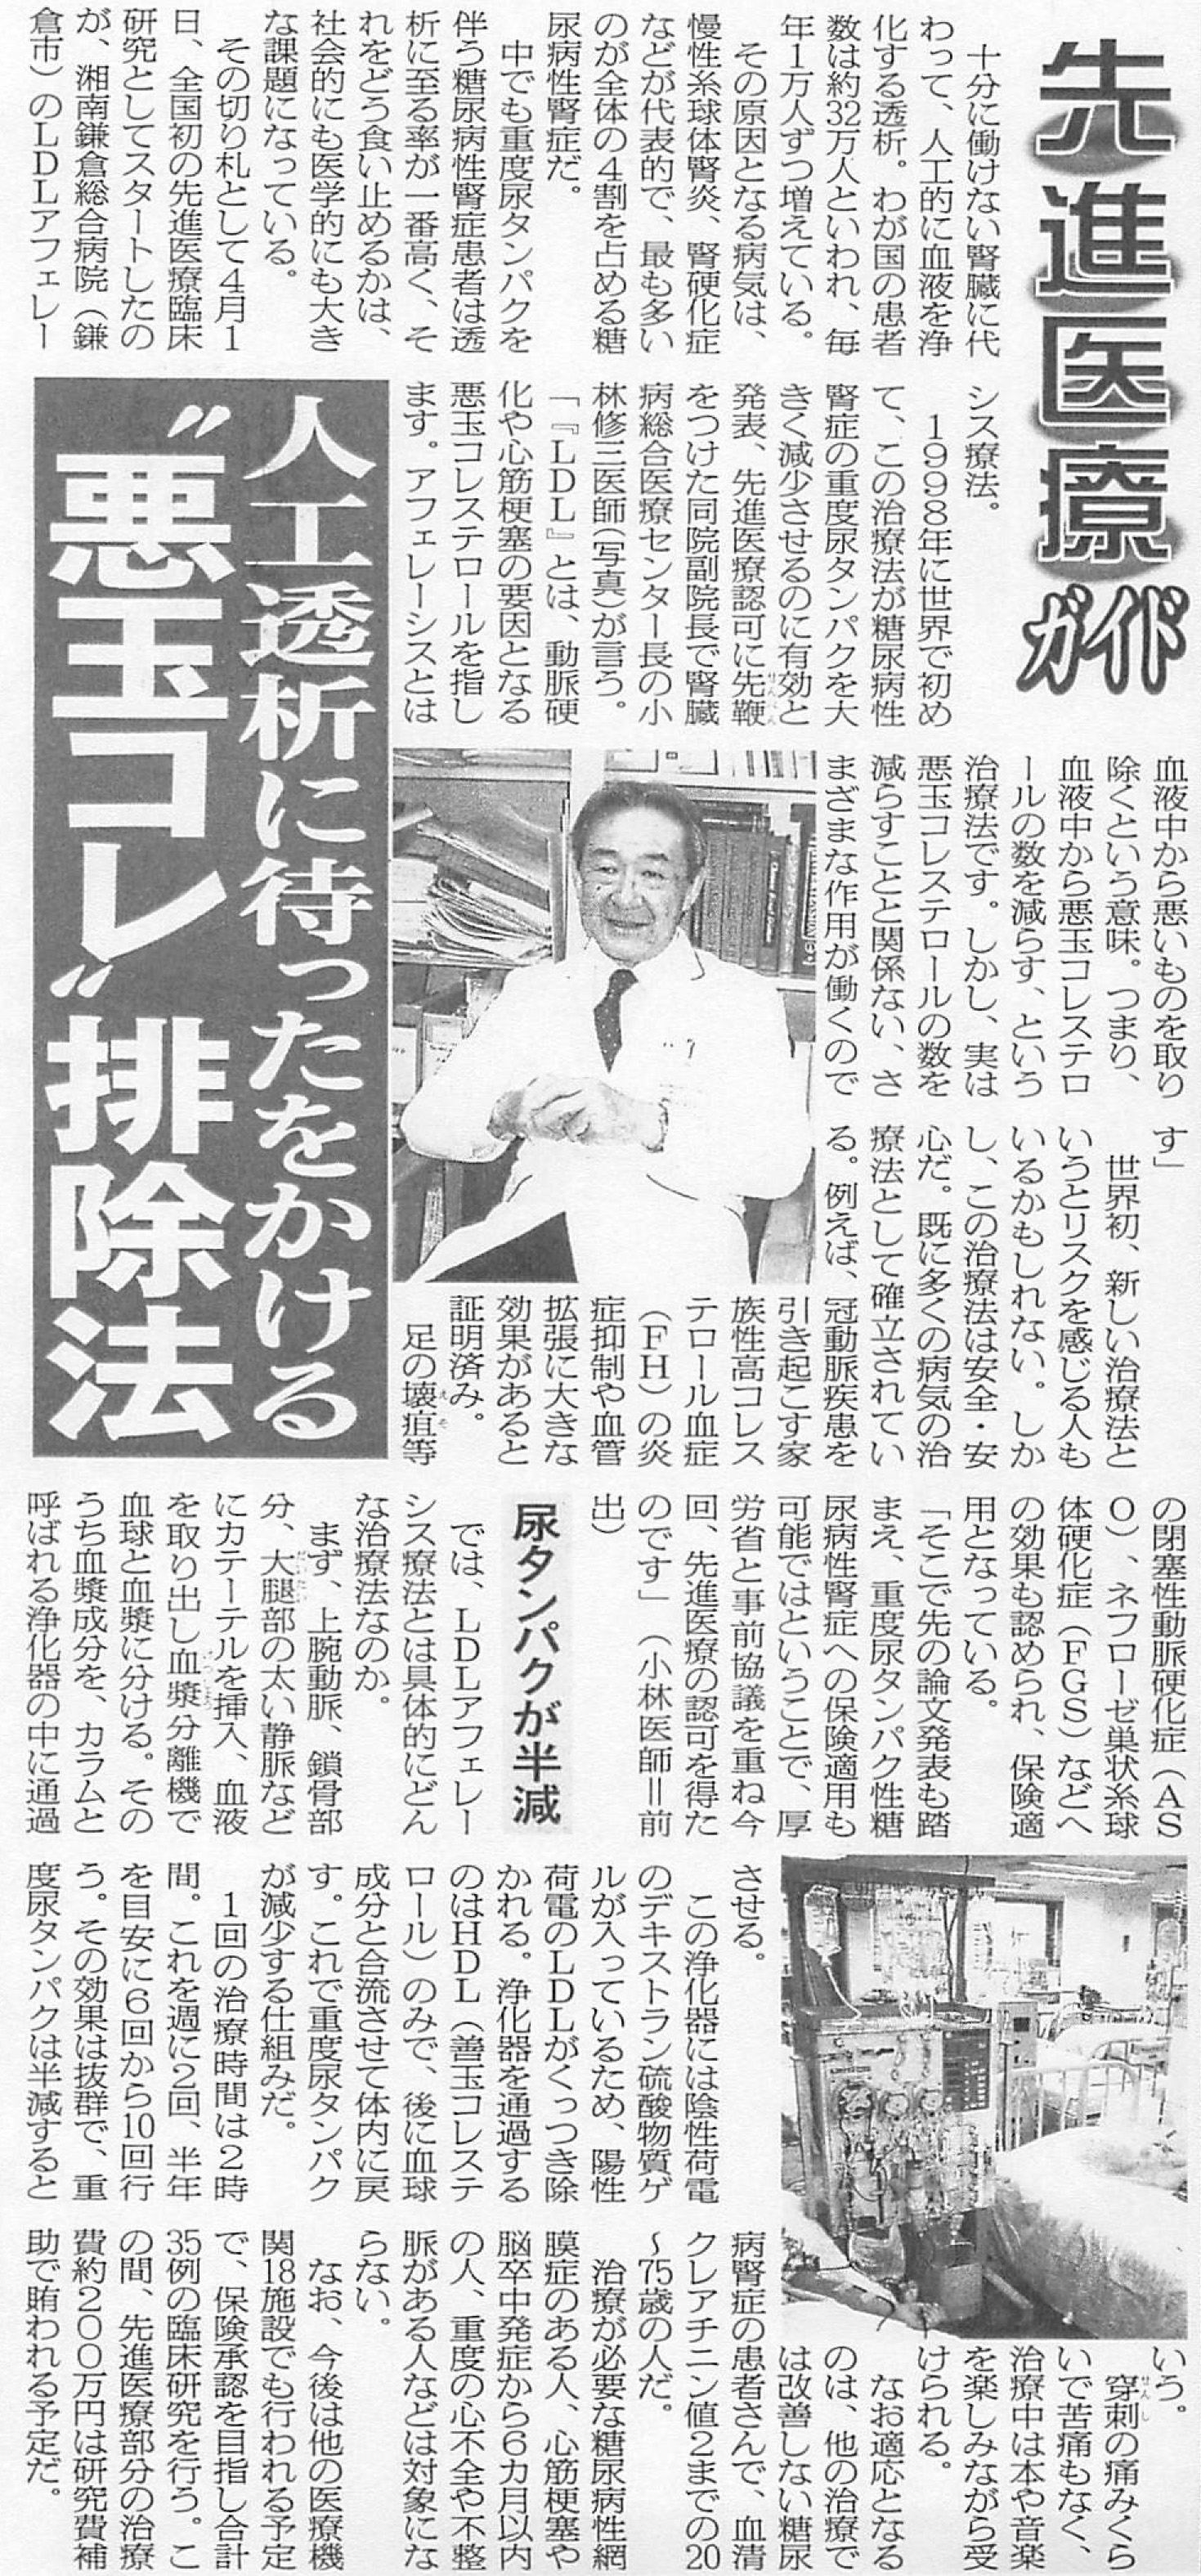 2015.05.01_日刊ゲンダイ.jpg